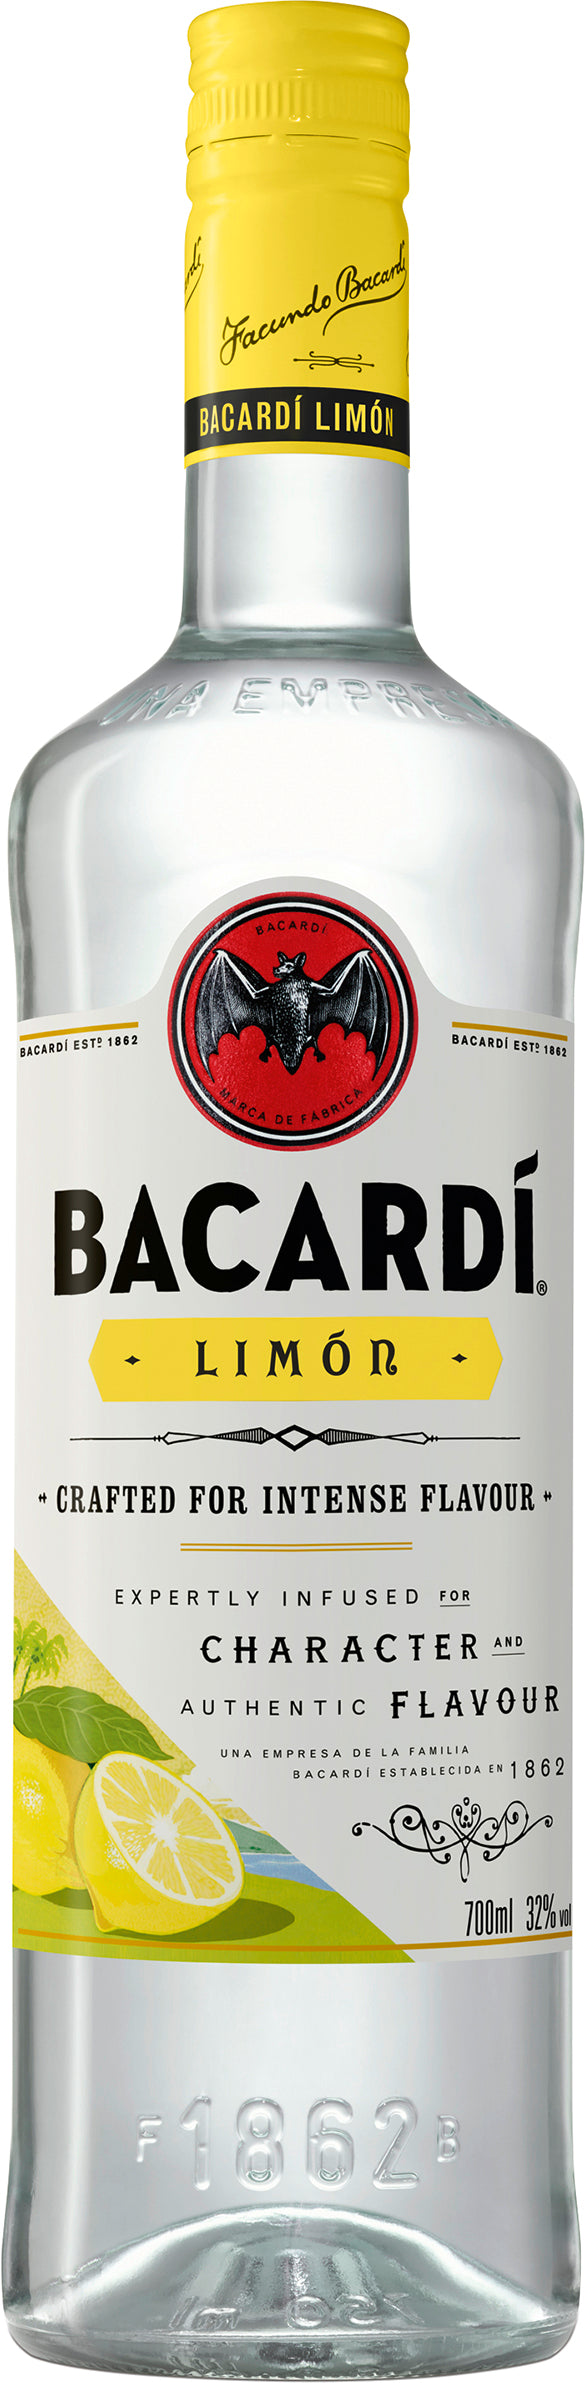 BACARDI Limon Spirituose gemixt mit Rum und Citrus Geschmack 32% Vol 700ml